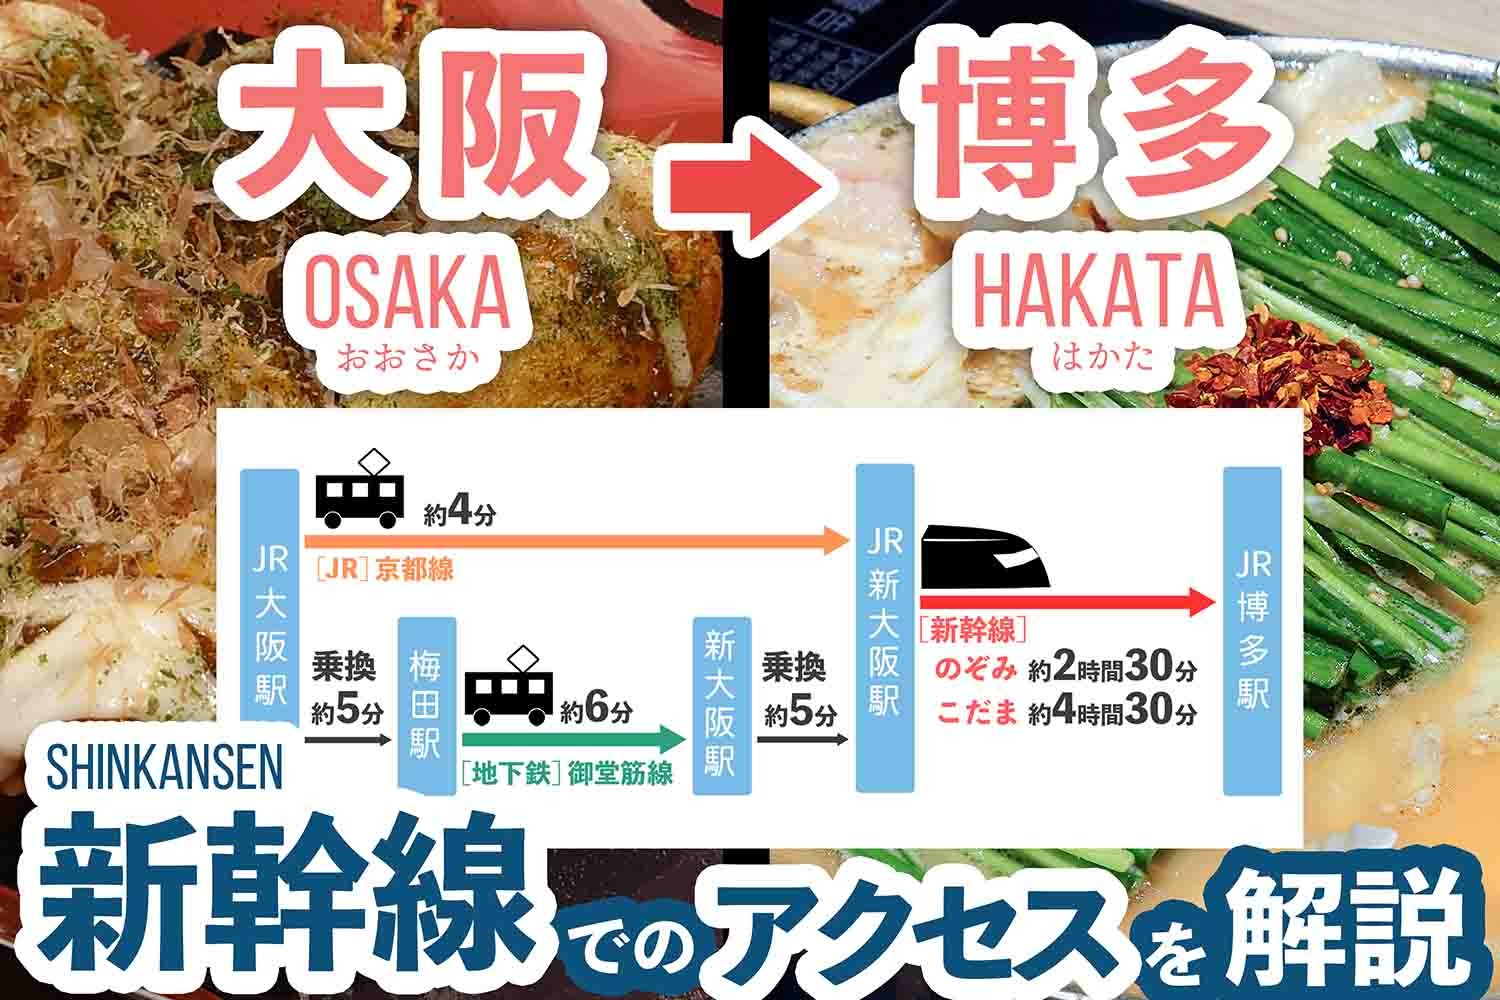 「大阪駅」から「博多駅」まで新幹線でのアクセス